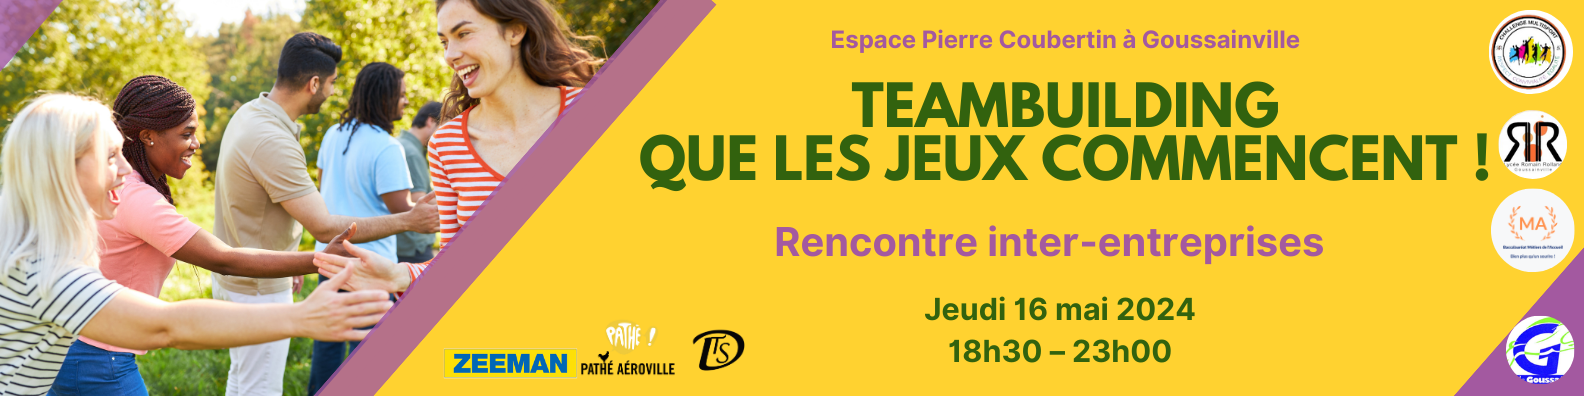 Team Building “Que comiencen los juegos” en Goussainville el 16 de mayo de 2024